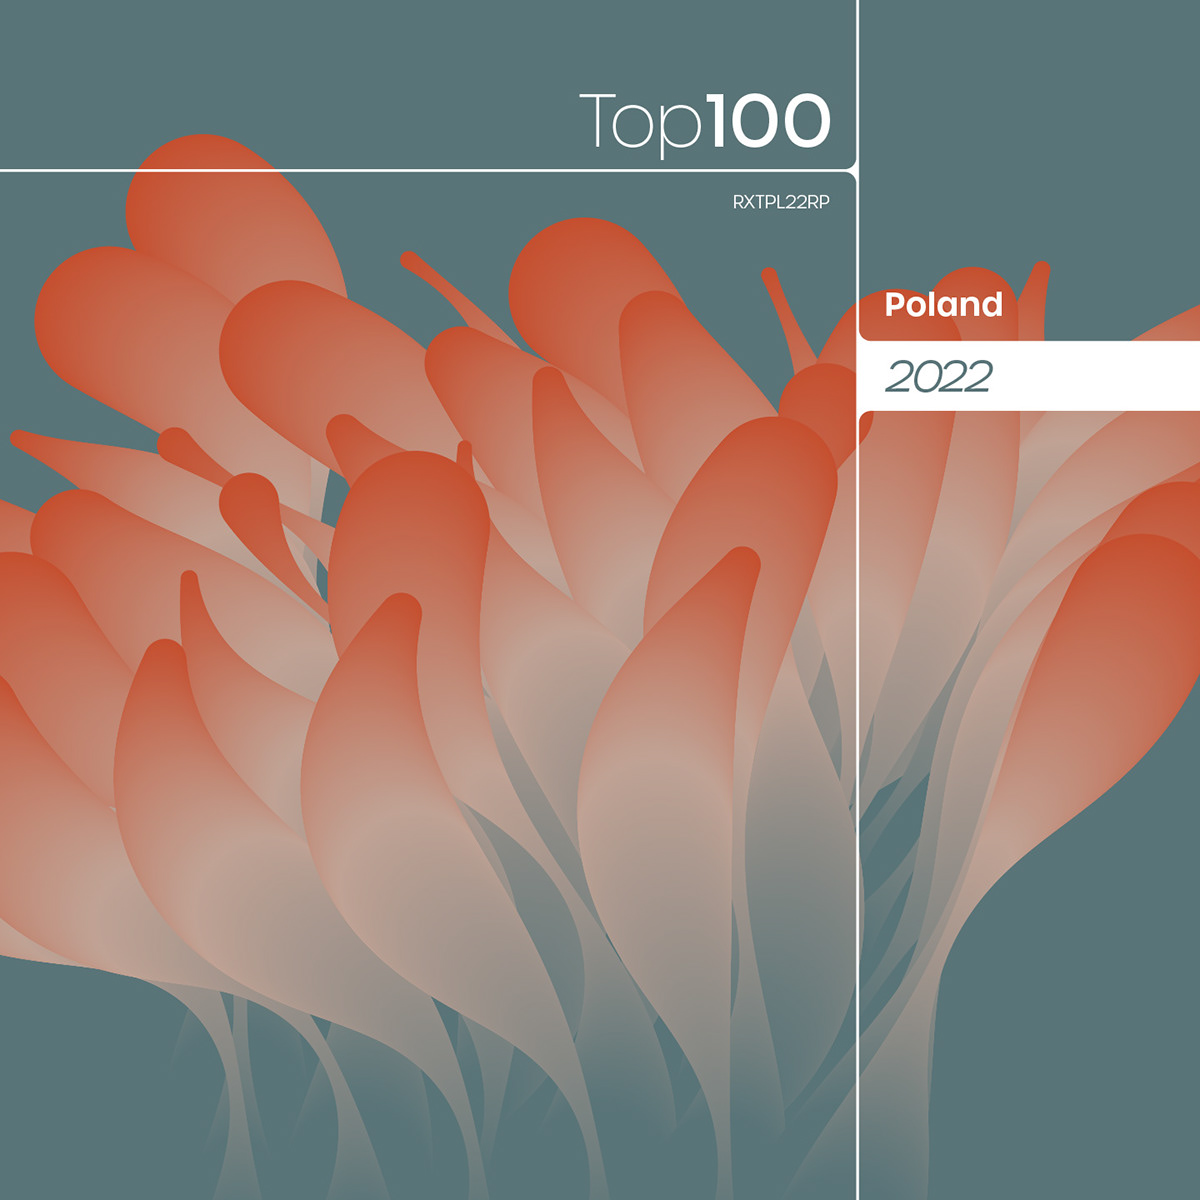 RetailX Ranking Report 2022 Poland Top 100